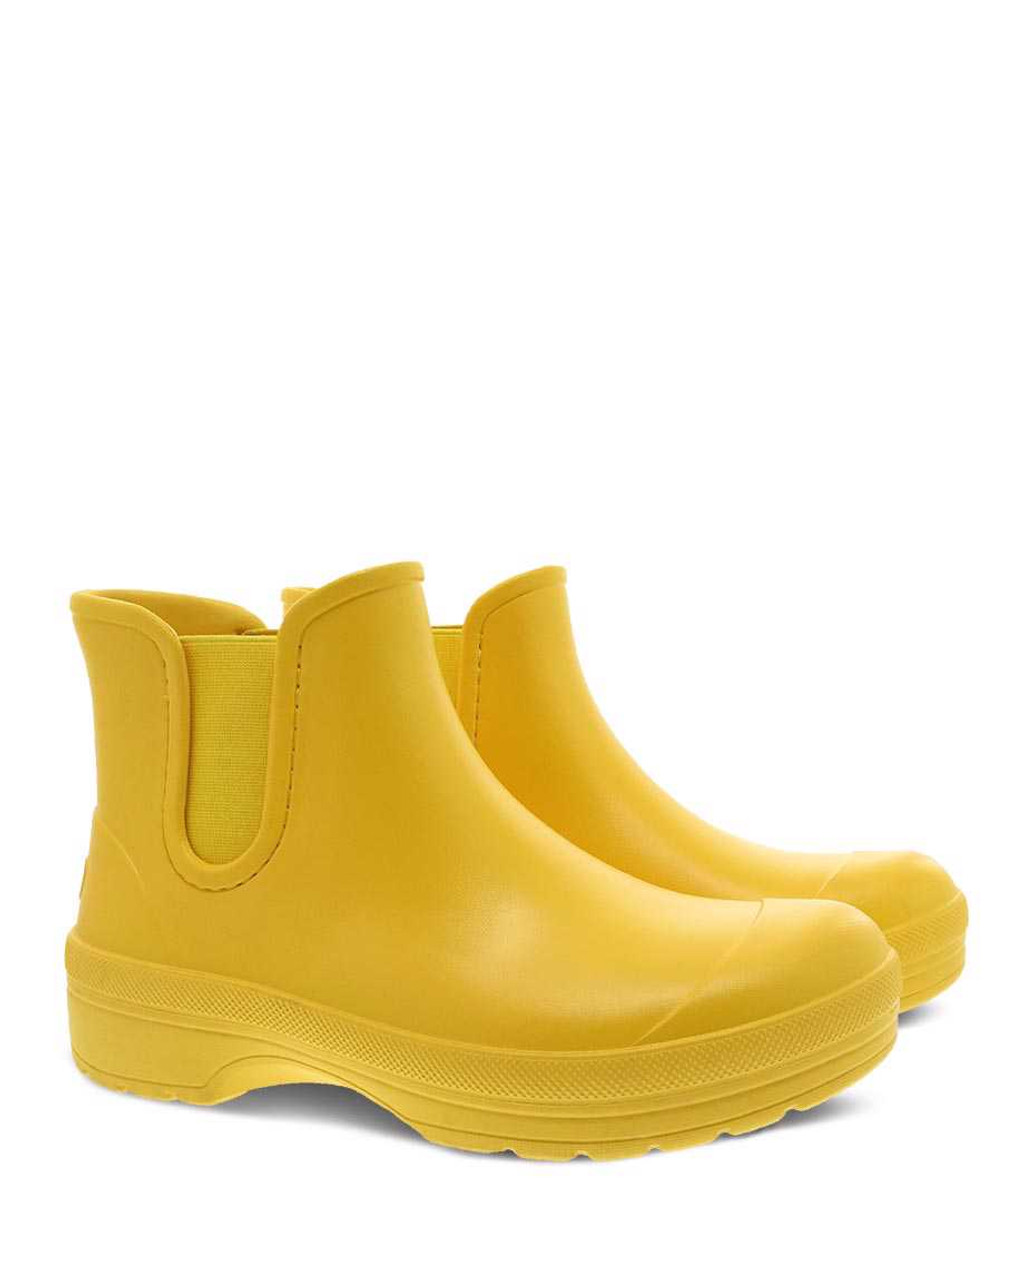 Dansko Karmel Rain Boot- Ladies Waterproof Boots